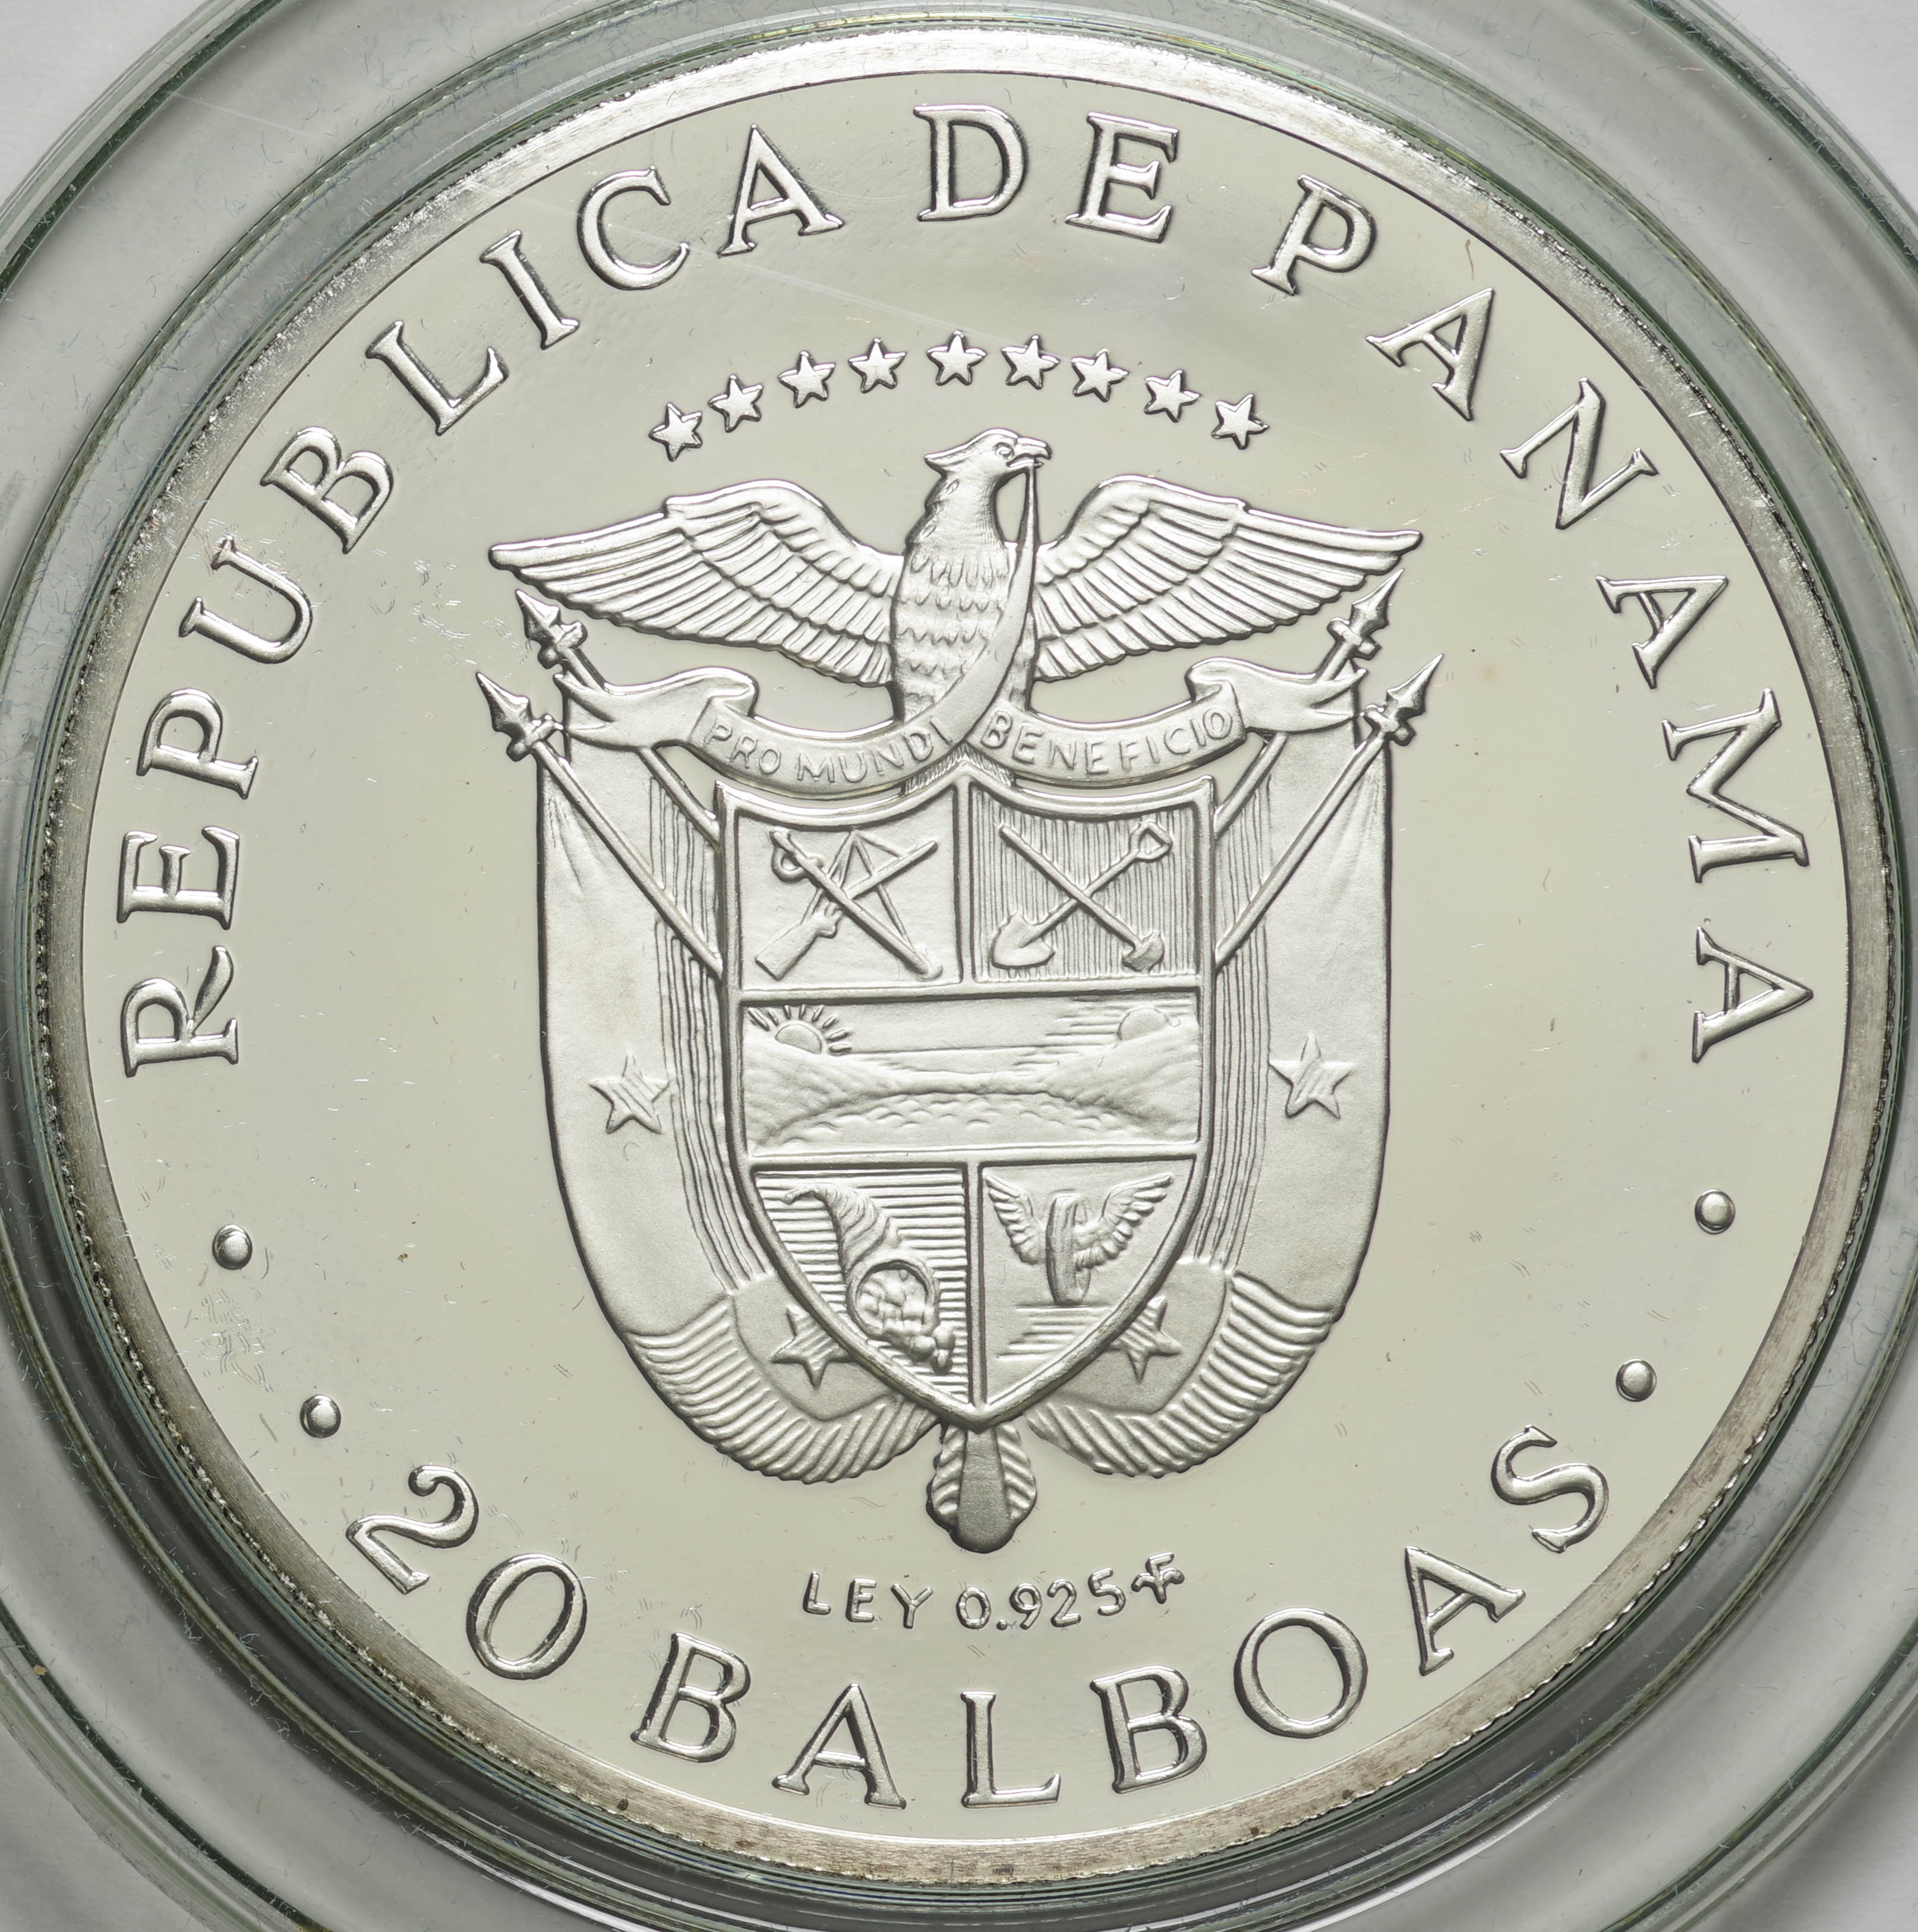 パナマ共和国 20バルボア銀貨 1枚 - 旧貨幣/金貨/銀貨/記念硬貨